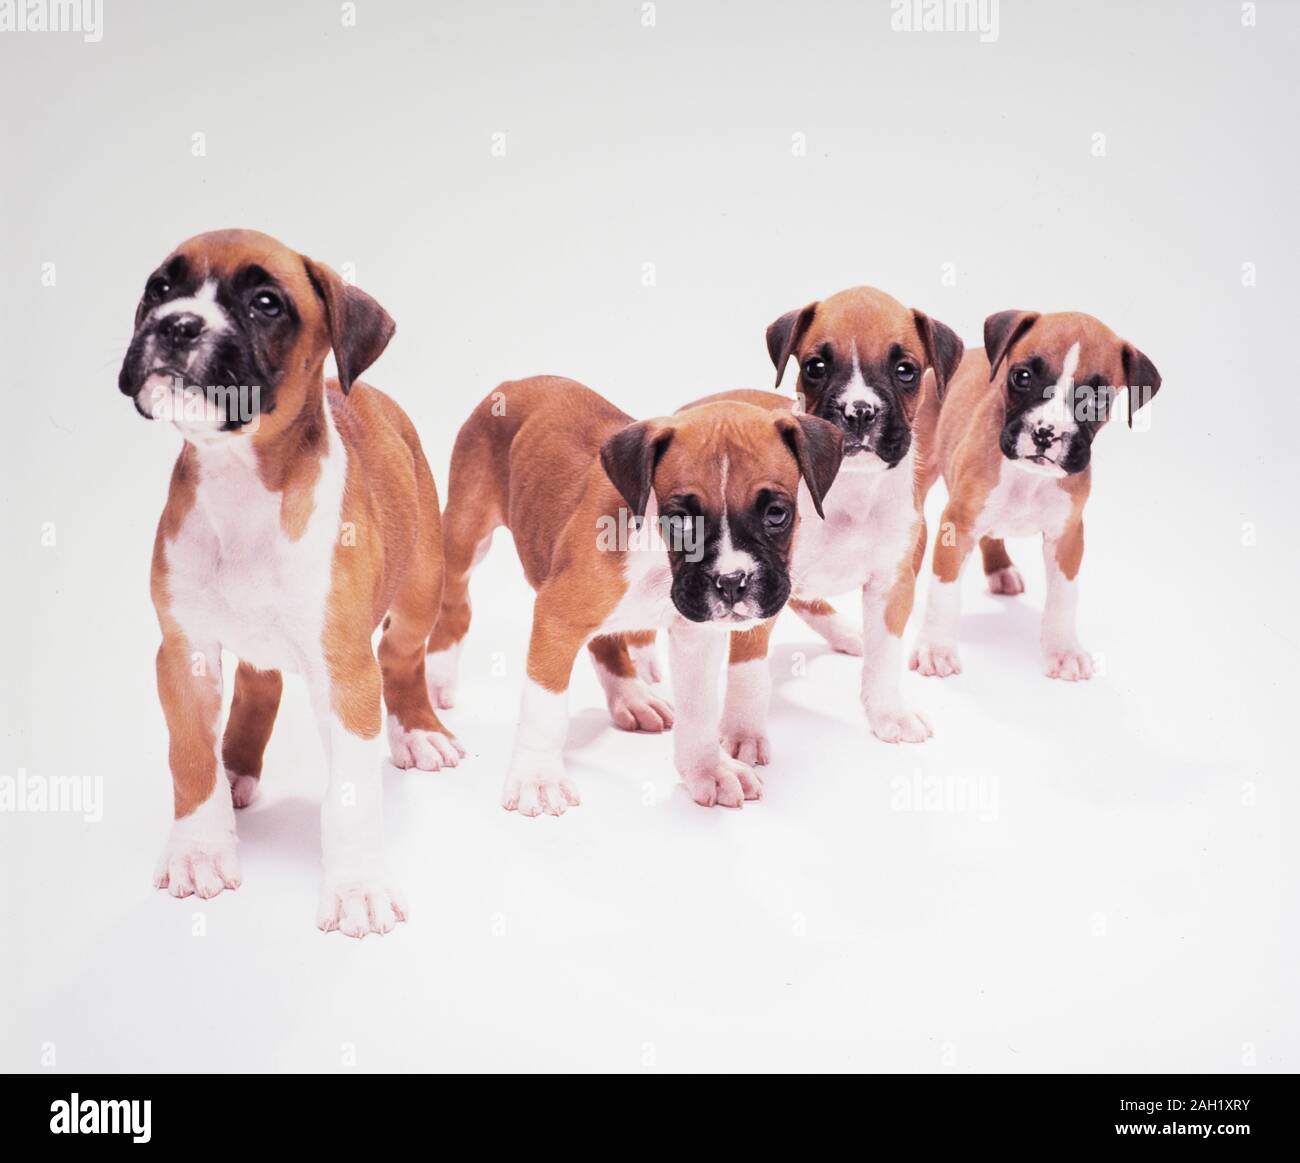 Boxer dog puppies on white backdrop Stock Photo